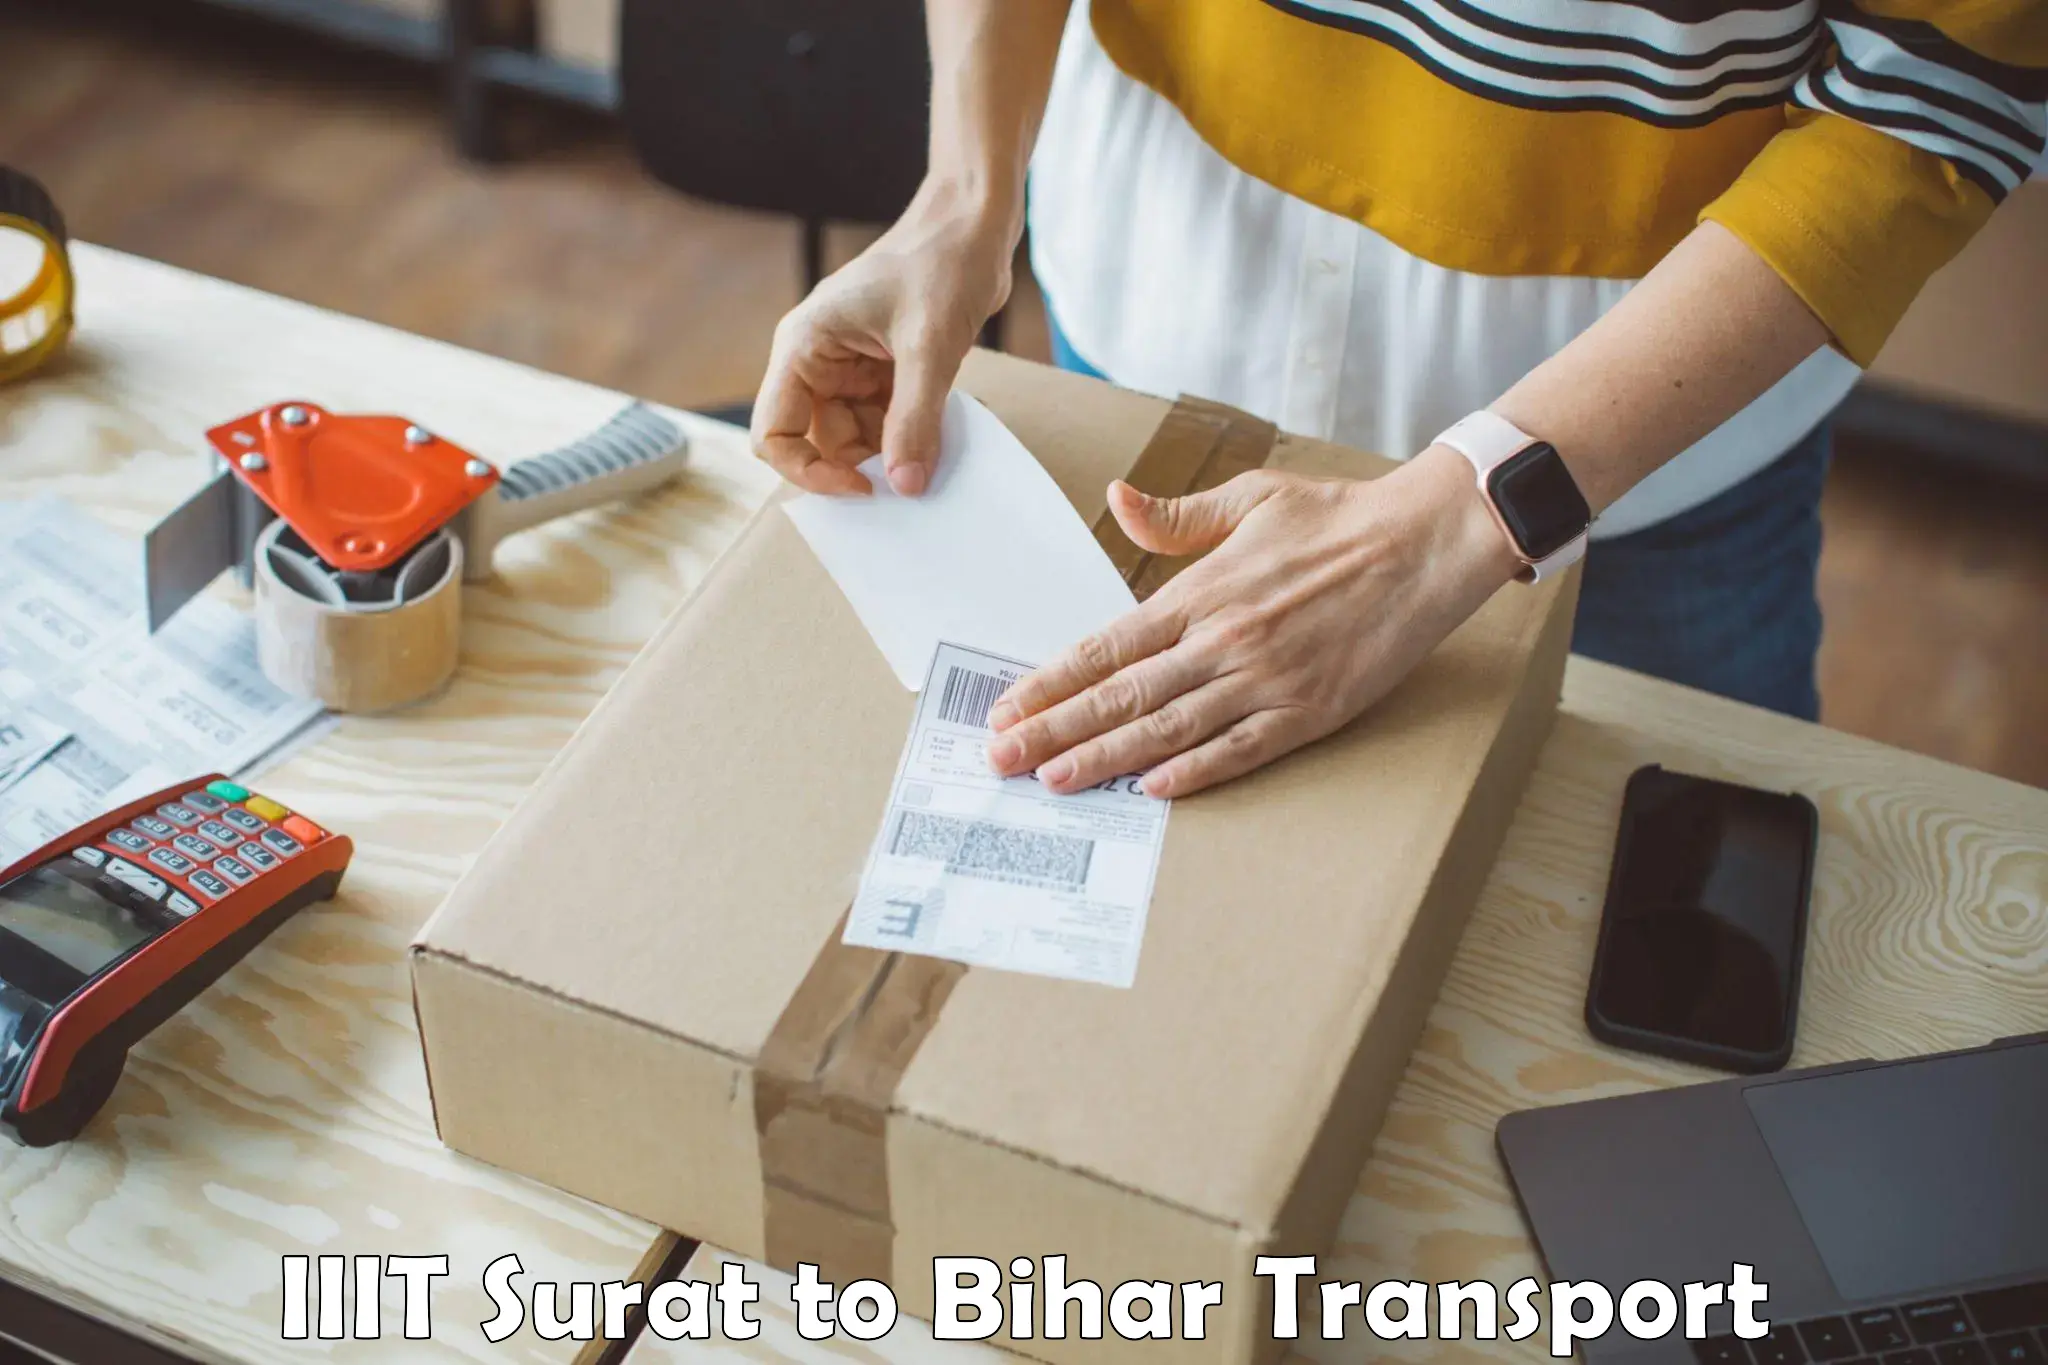 Best transport services in India in IIIT Surat to Bihar